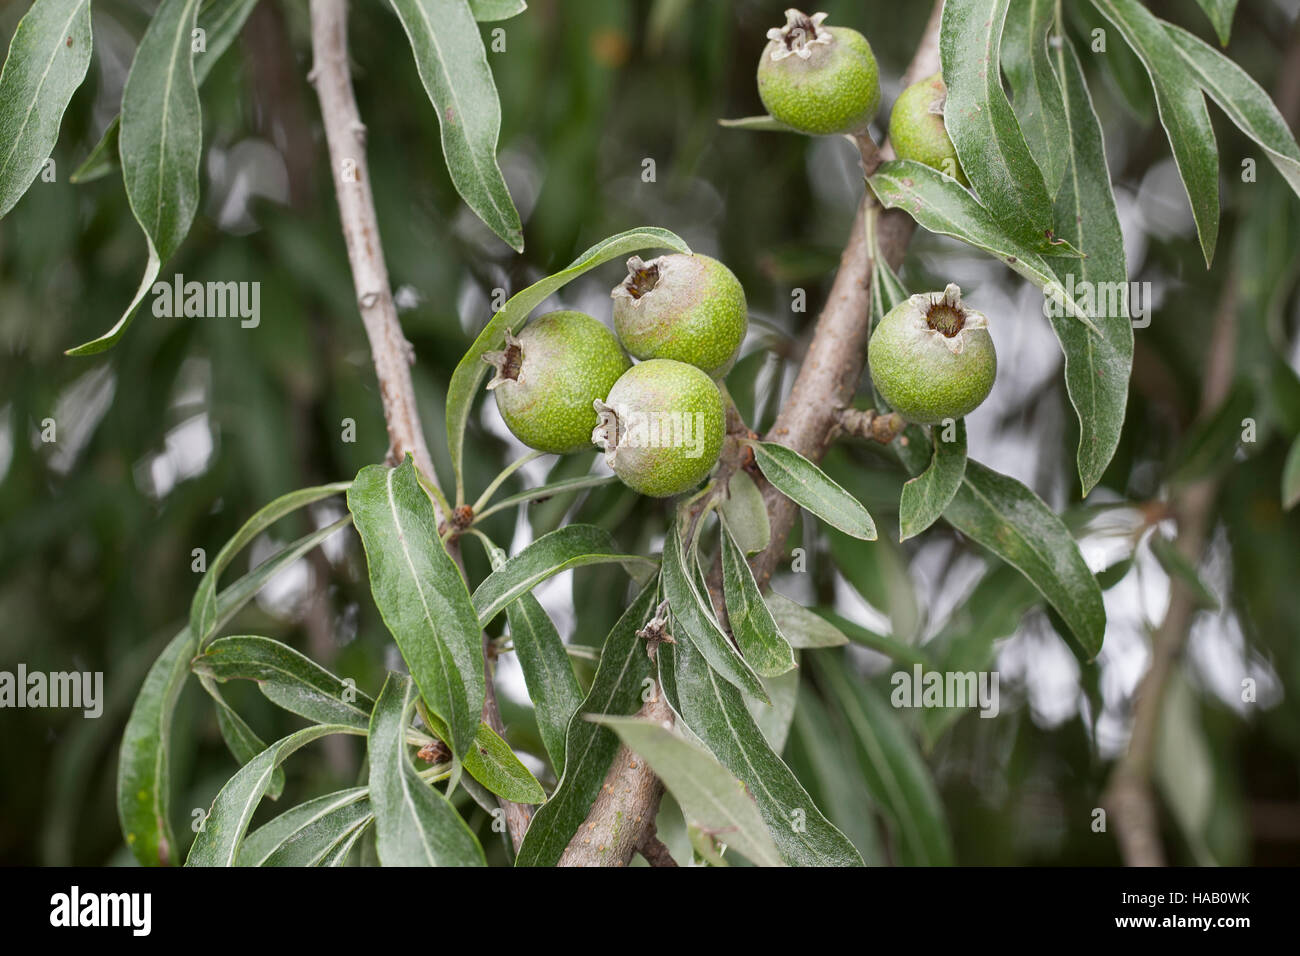 Weidenblättrige Birne, Weiden-Birne, Pyrus salicifolia, Willow-leaved Pear, Willow leaved Pear, Willowleaf Pear, Weeping Pear Stock Photo